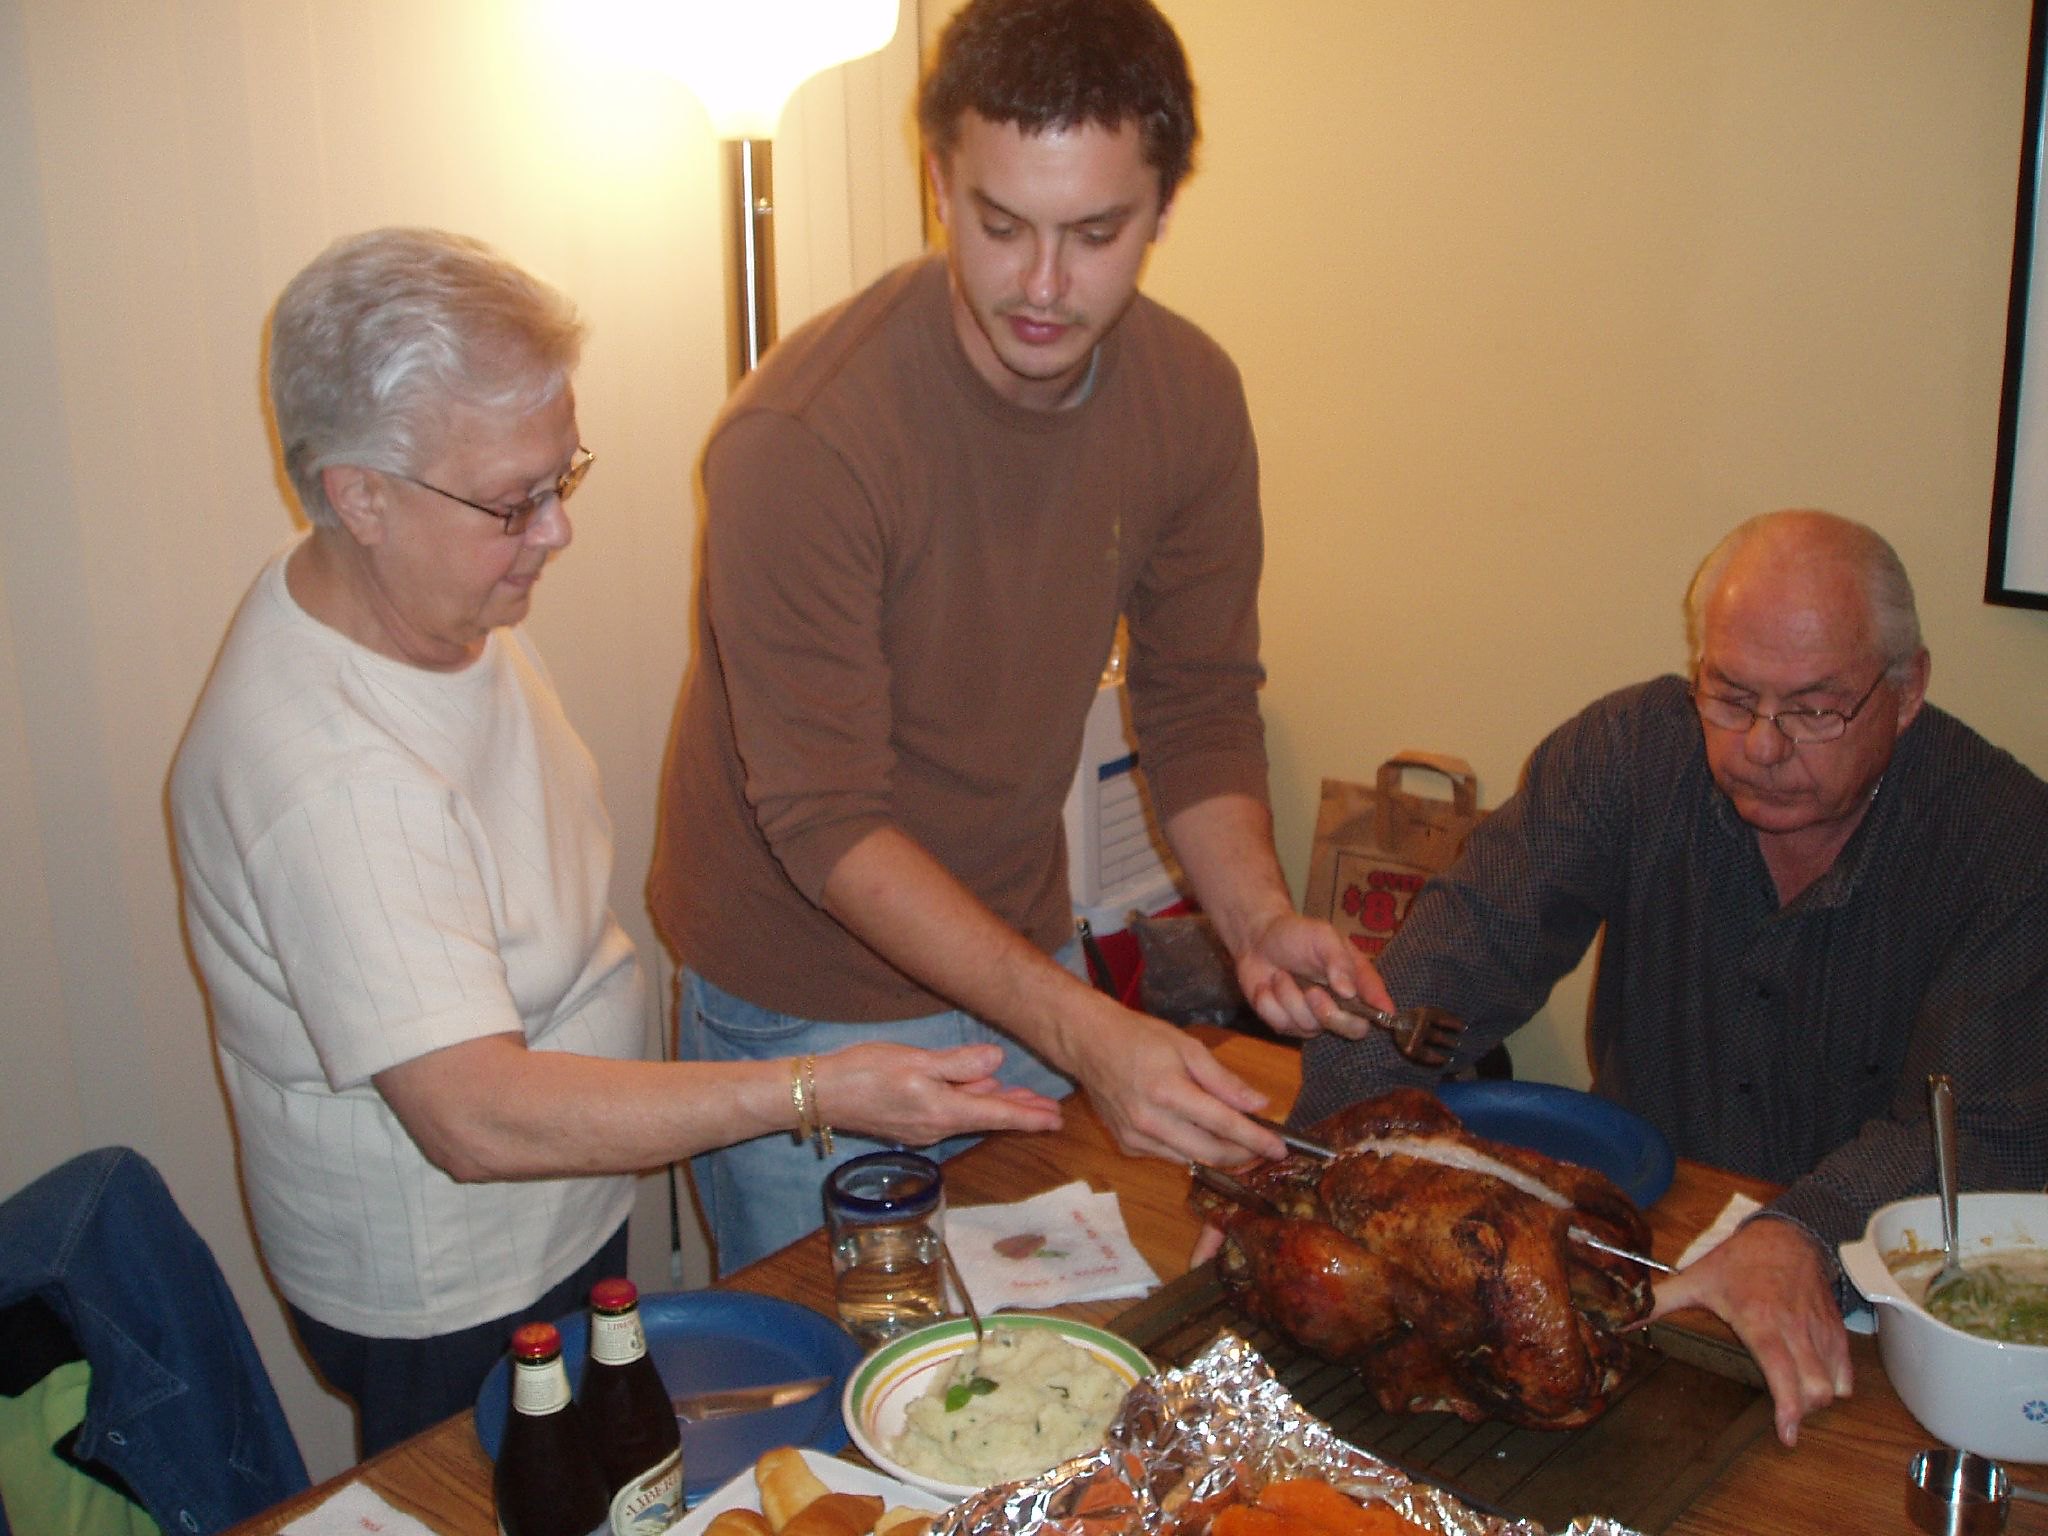 Une famille de trois personnes s'est réunie pour le dîner de Thanksgiving | Source : Flickr